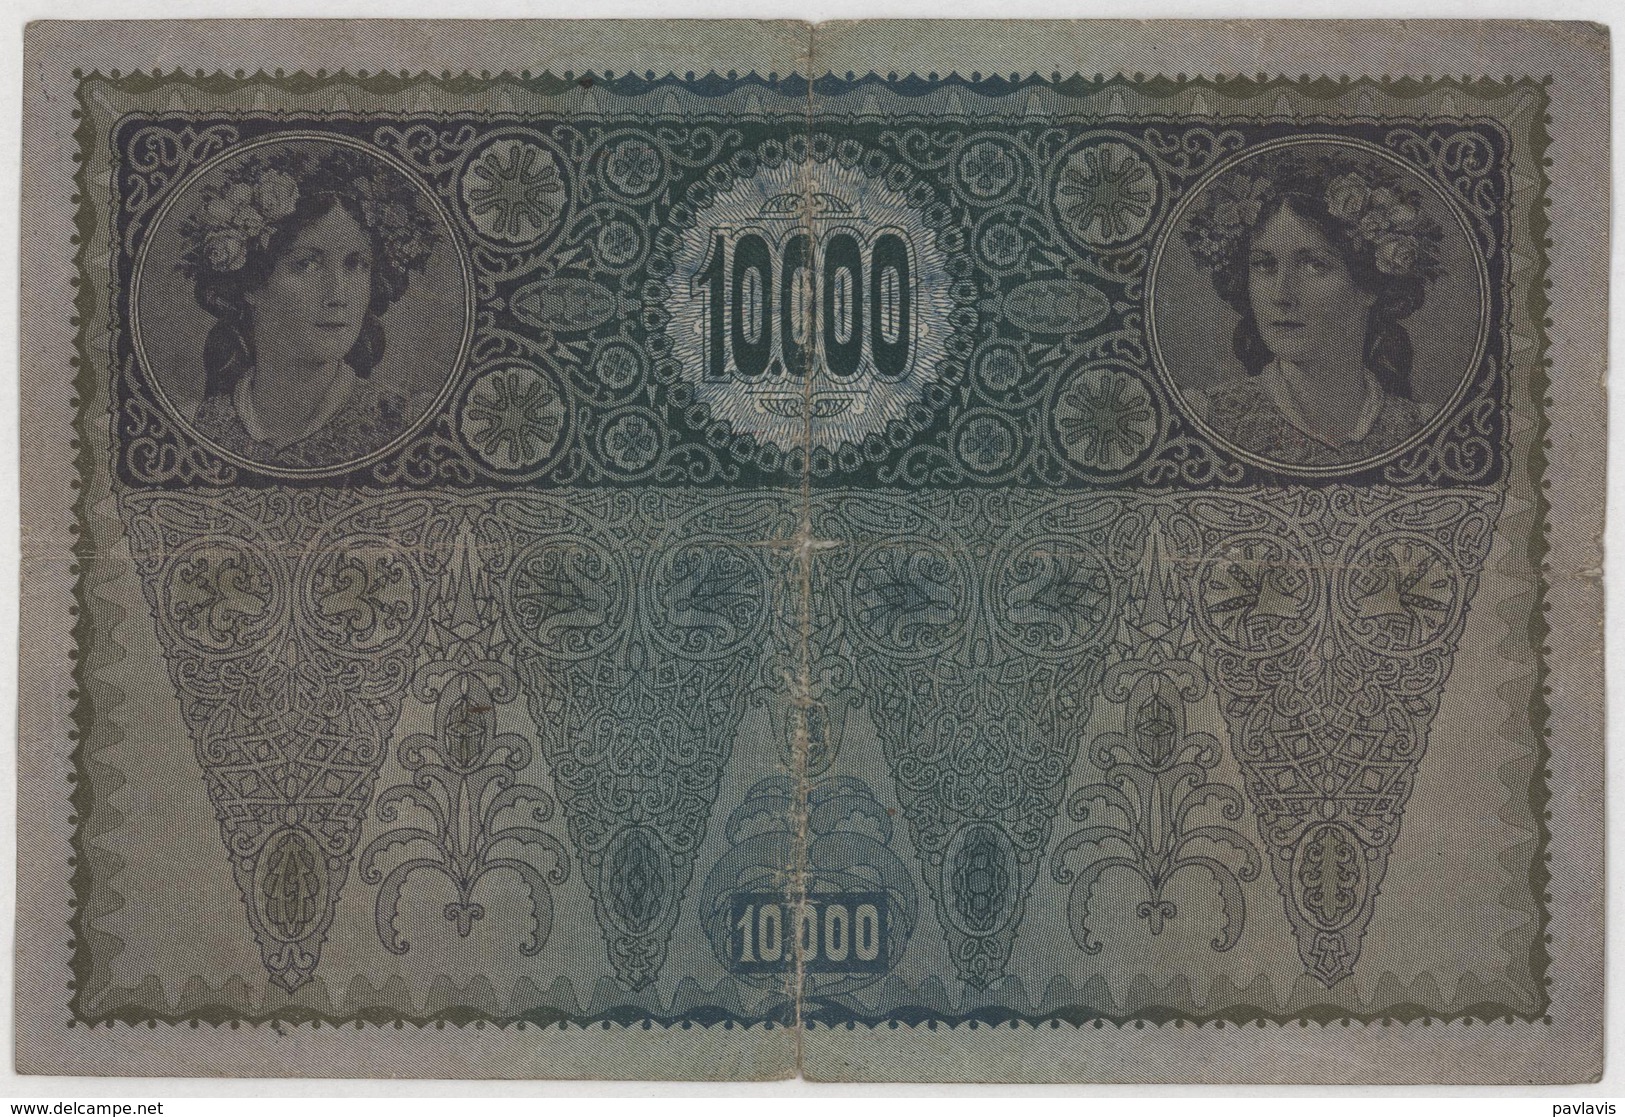 Zehntausend Kronen / 10 000 Kronen - Österreich-Ungarn / Austria-Hungary - Year 1918 - Other - Europe